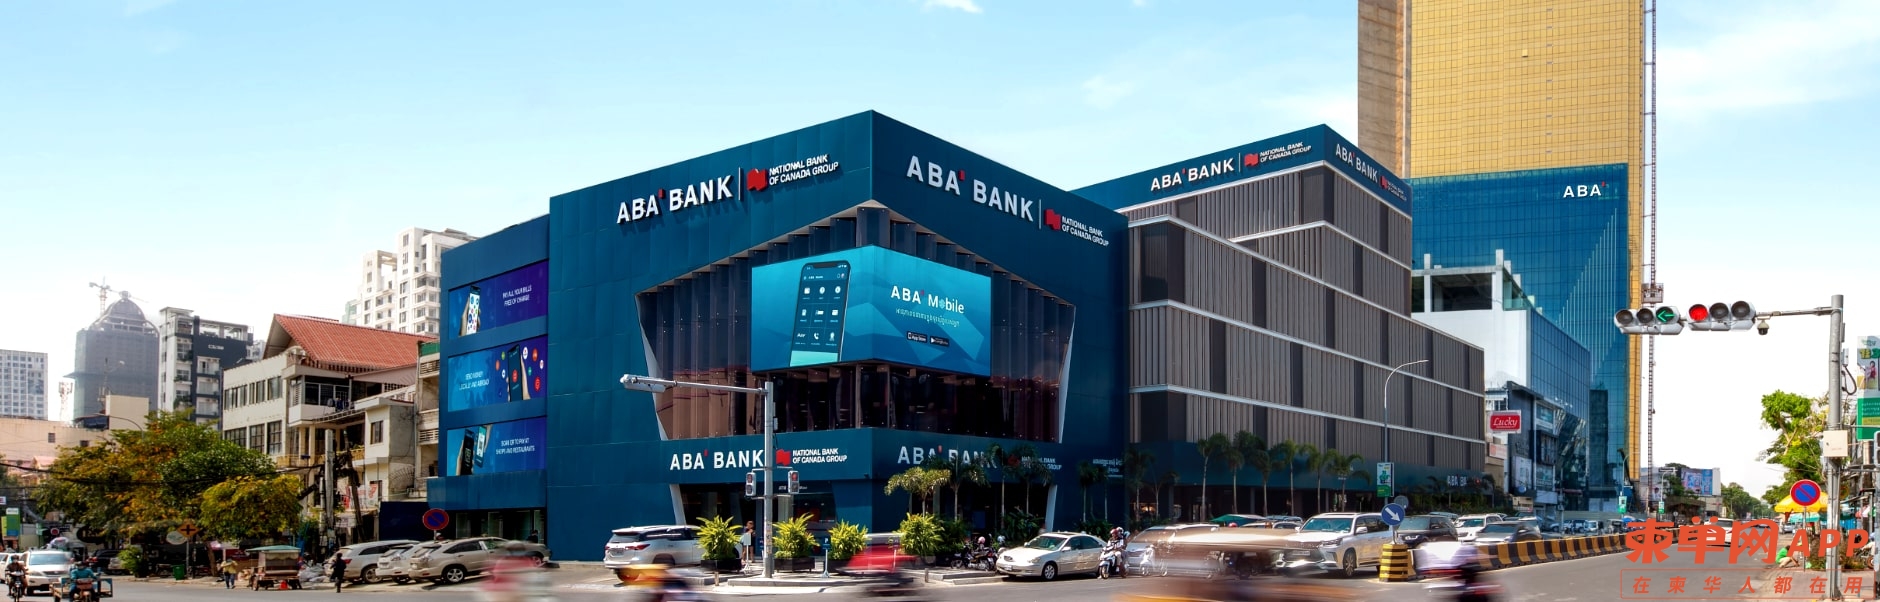 ABA-basic-banking-new_22.jpg